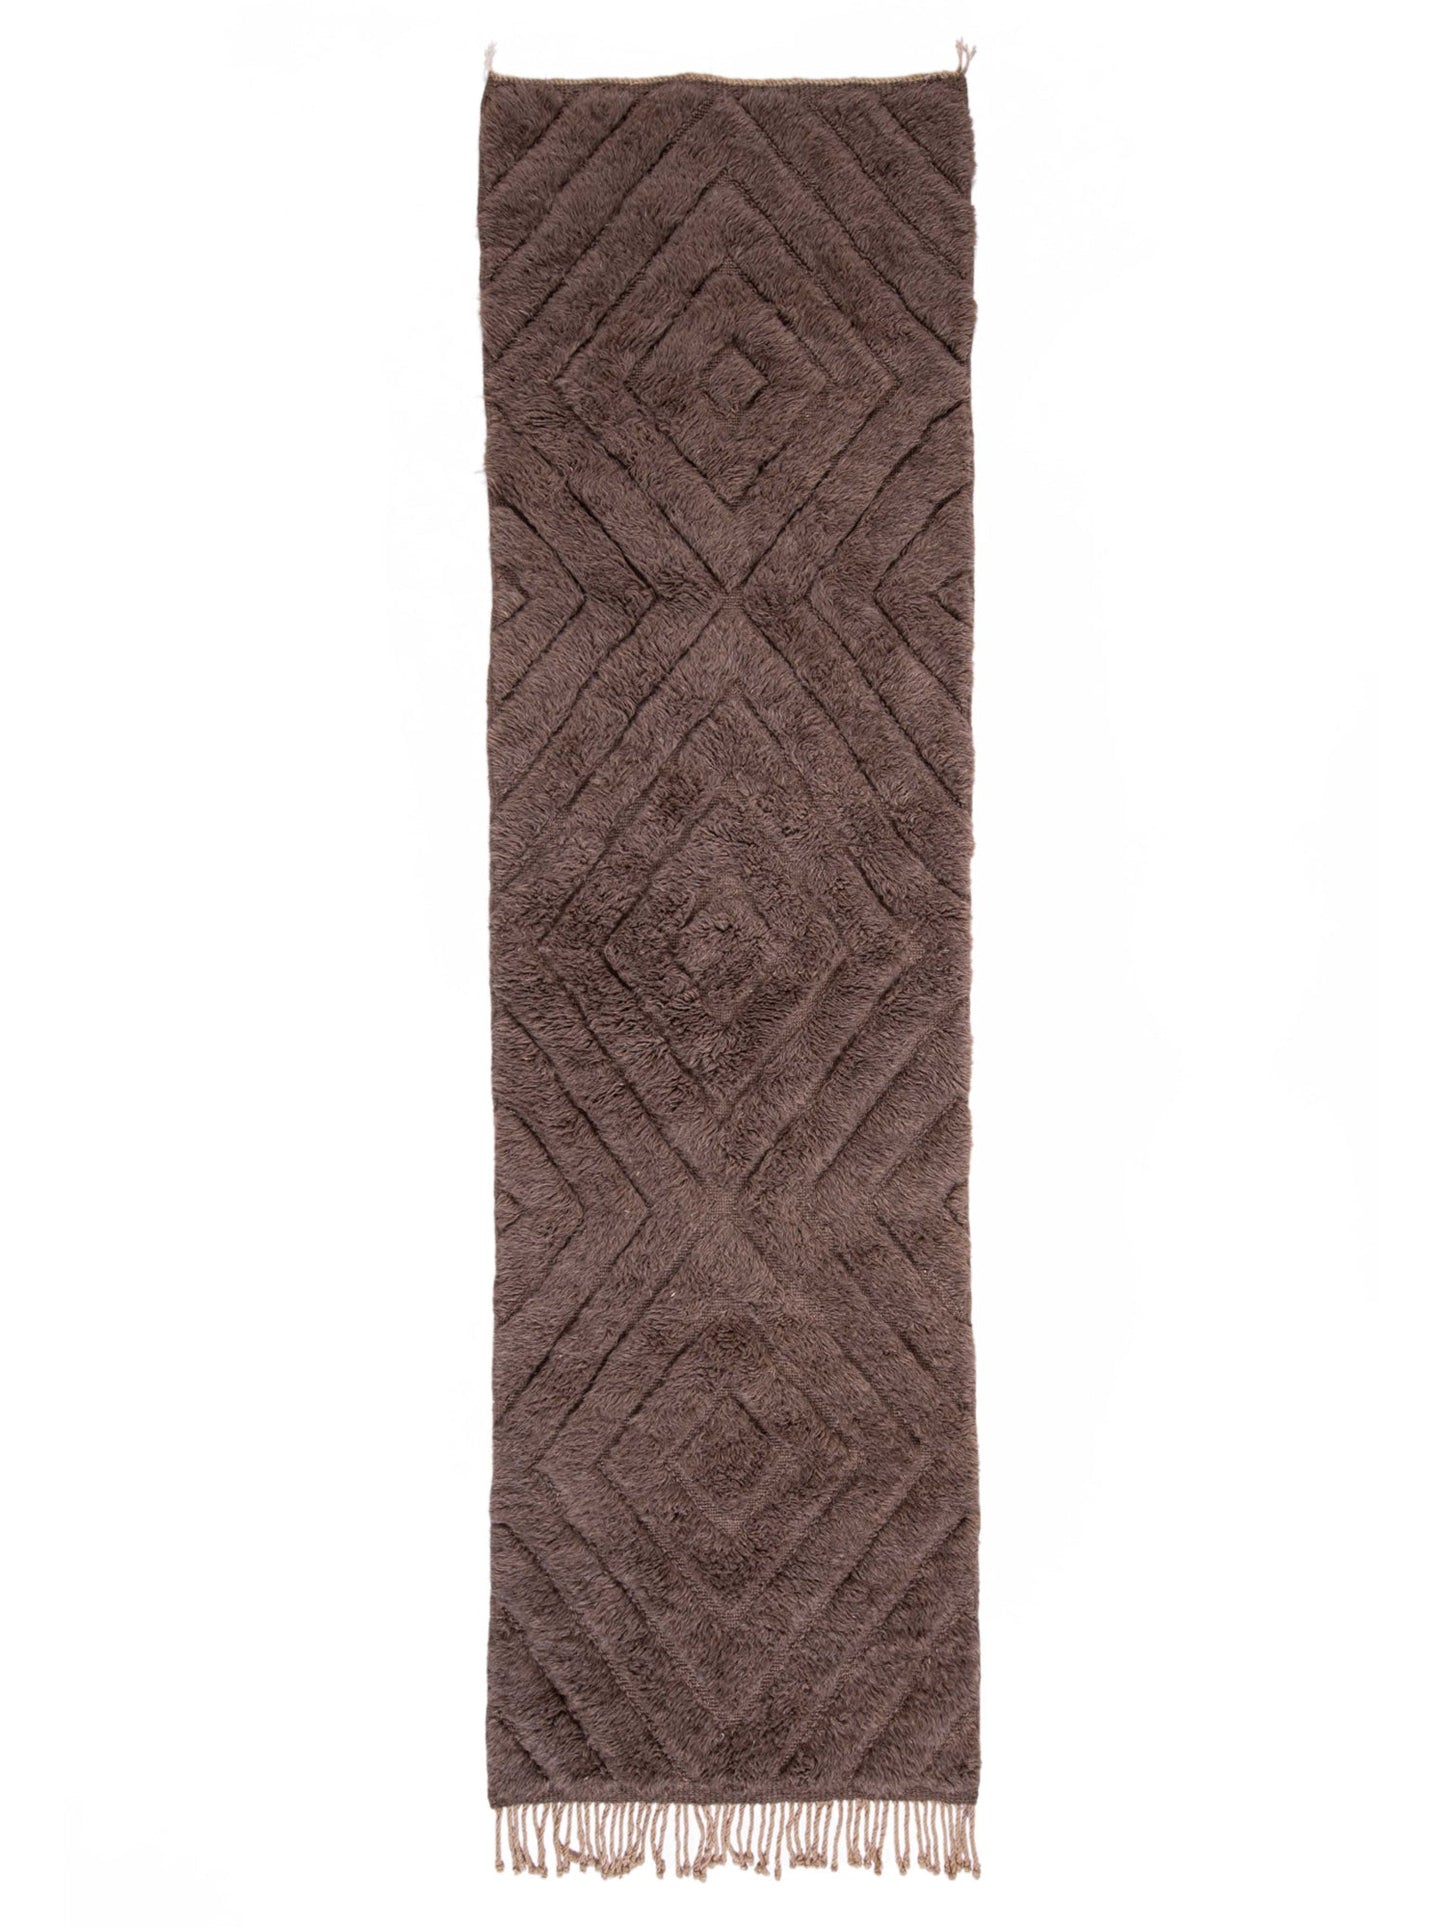 Vloerkleed MOMO Rugs Design Berber Mrirt Inlaid Lines Mel 021 Vloerkledenwinkel